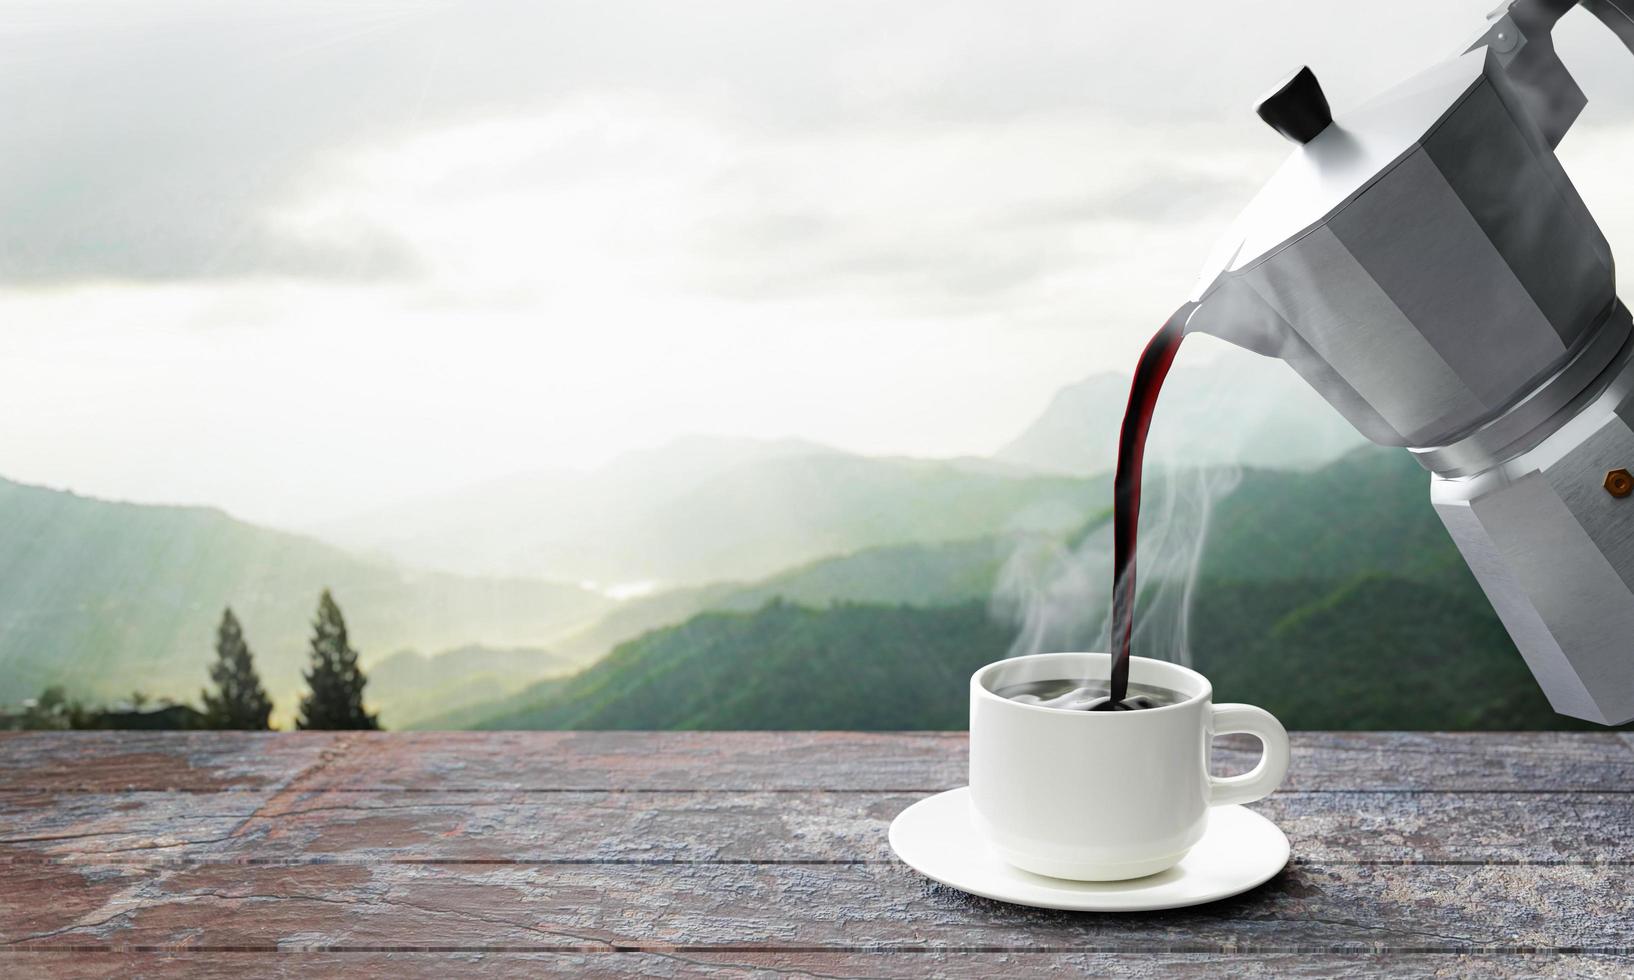 giet vers gezette koffie of espresso uit de mokkapot in een witte koffiemok. hete koffie in een mok op het tafelblad of houten balkon. ochtend uitzicht op de bergen, ochtendzon. 3D-rendering foto